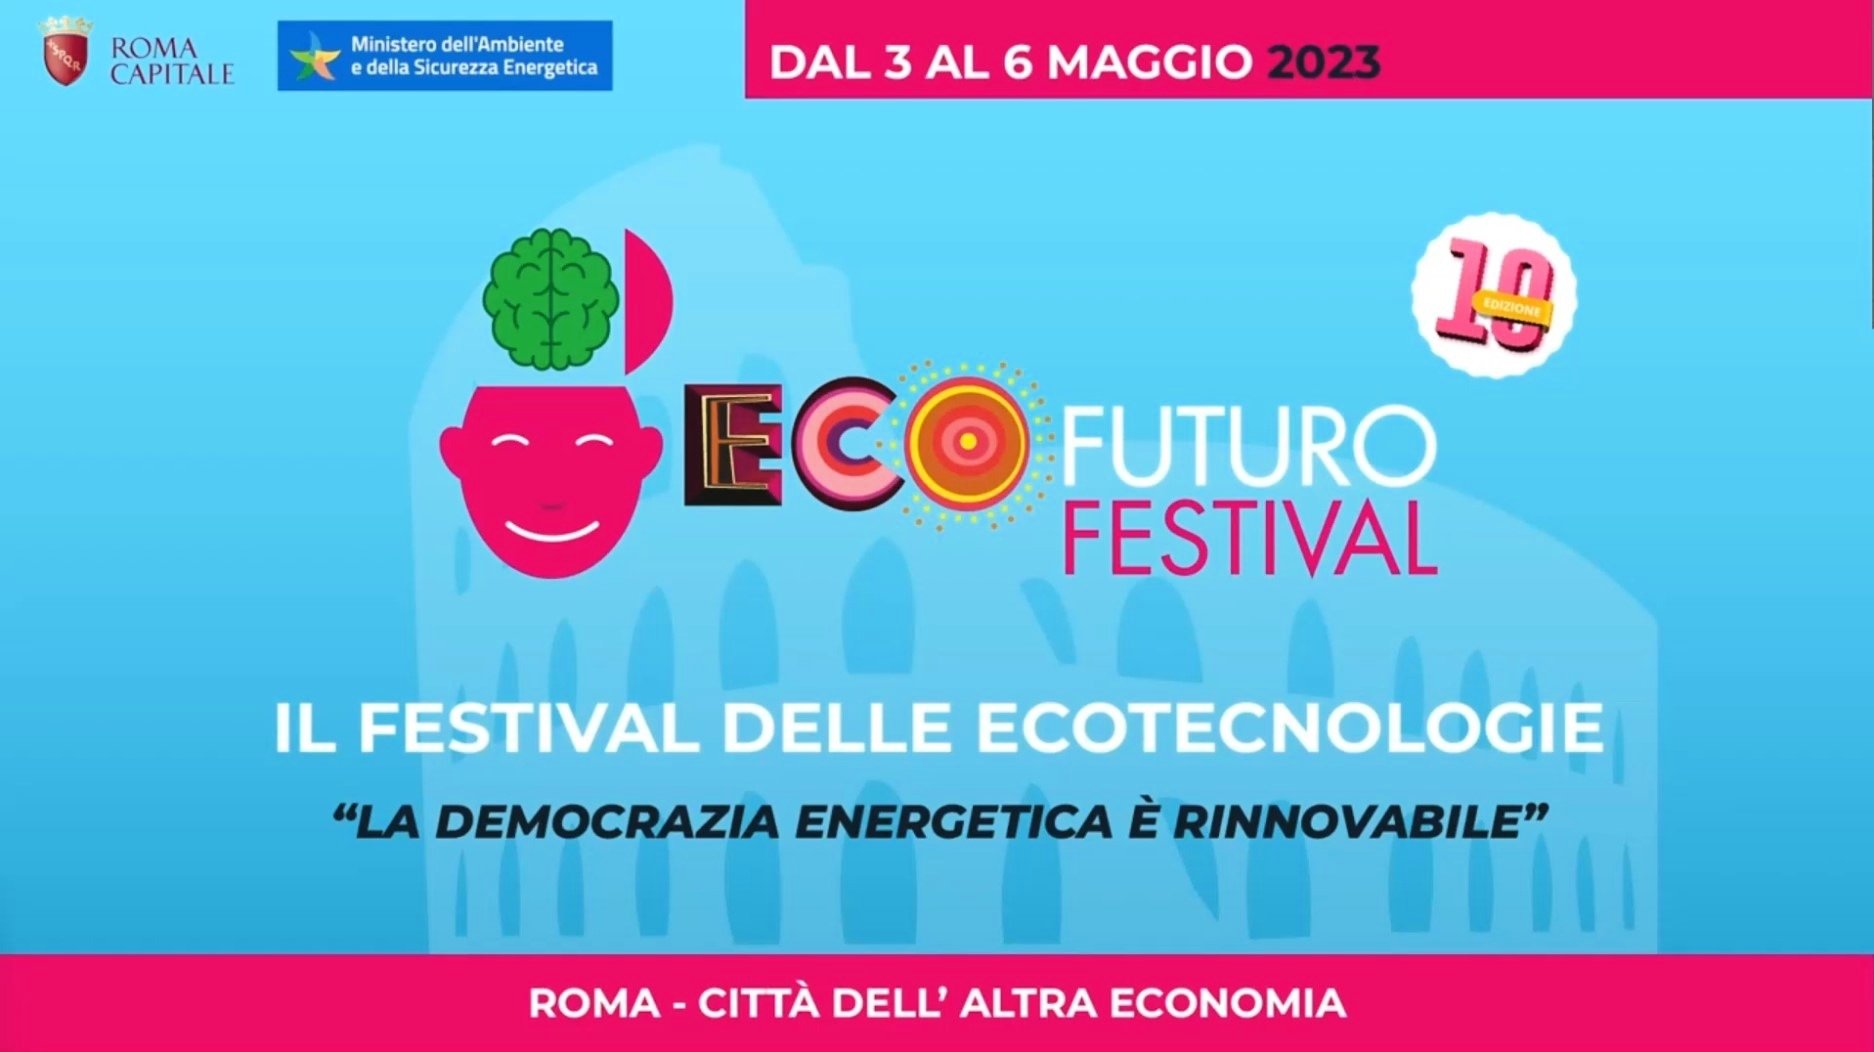 ISOLARE a Ecofuturo Festival 2023 Ecofuturo_miniatura_343_1.jpg (Art. corrente, Pag. 1, Foto generica)